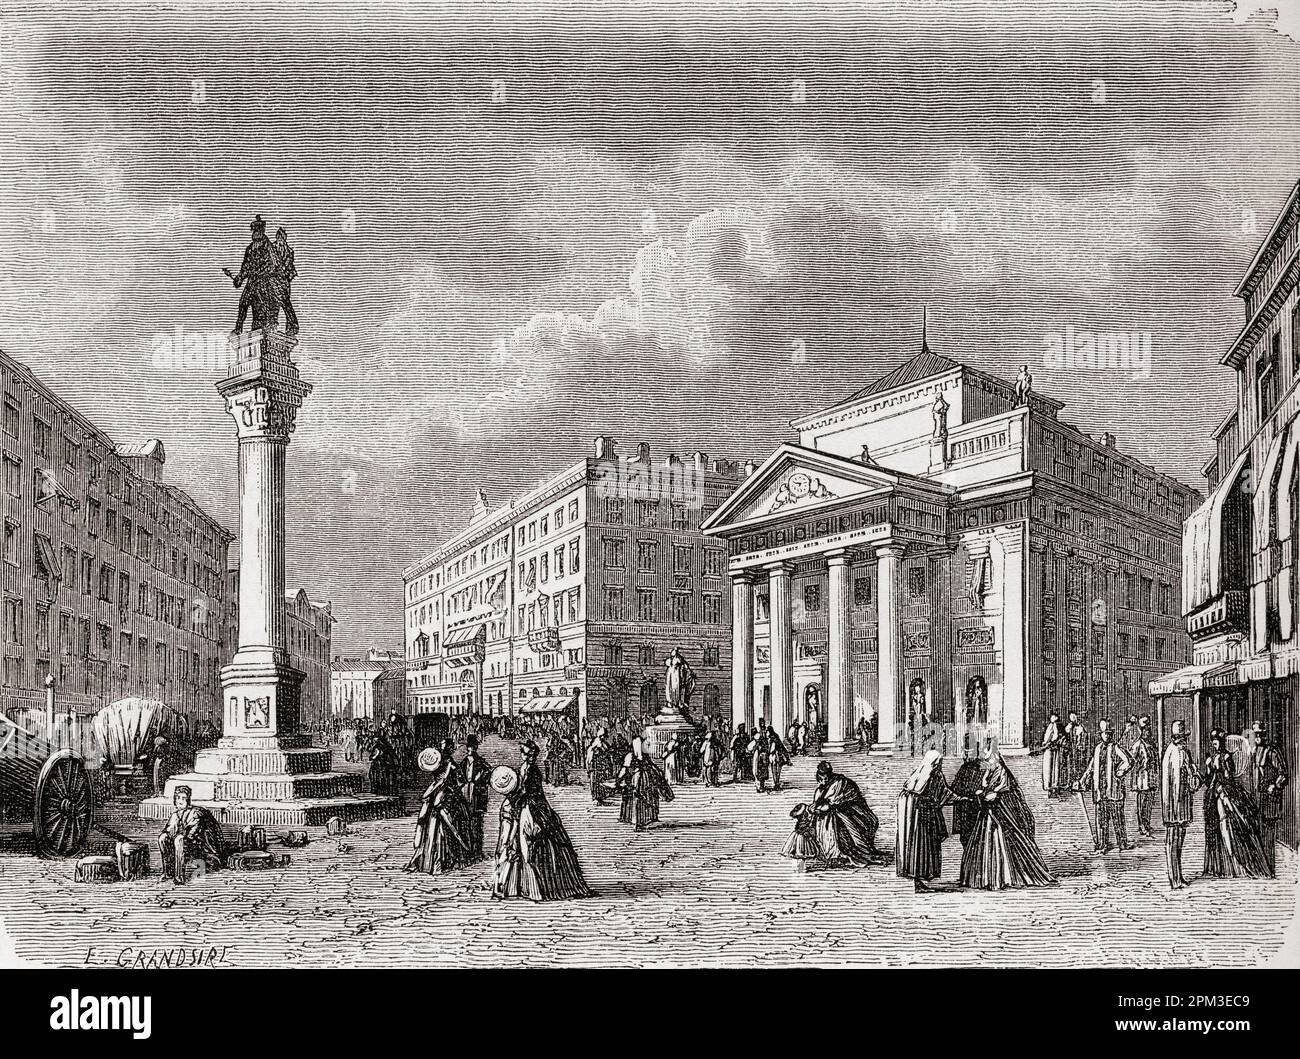 Piazza della Borsa, Trieste, Italia nel 19th° secolo. Da El Mundo en la mano, pubblicato nel 1878. Foto Stock